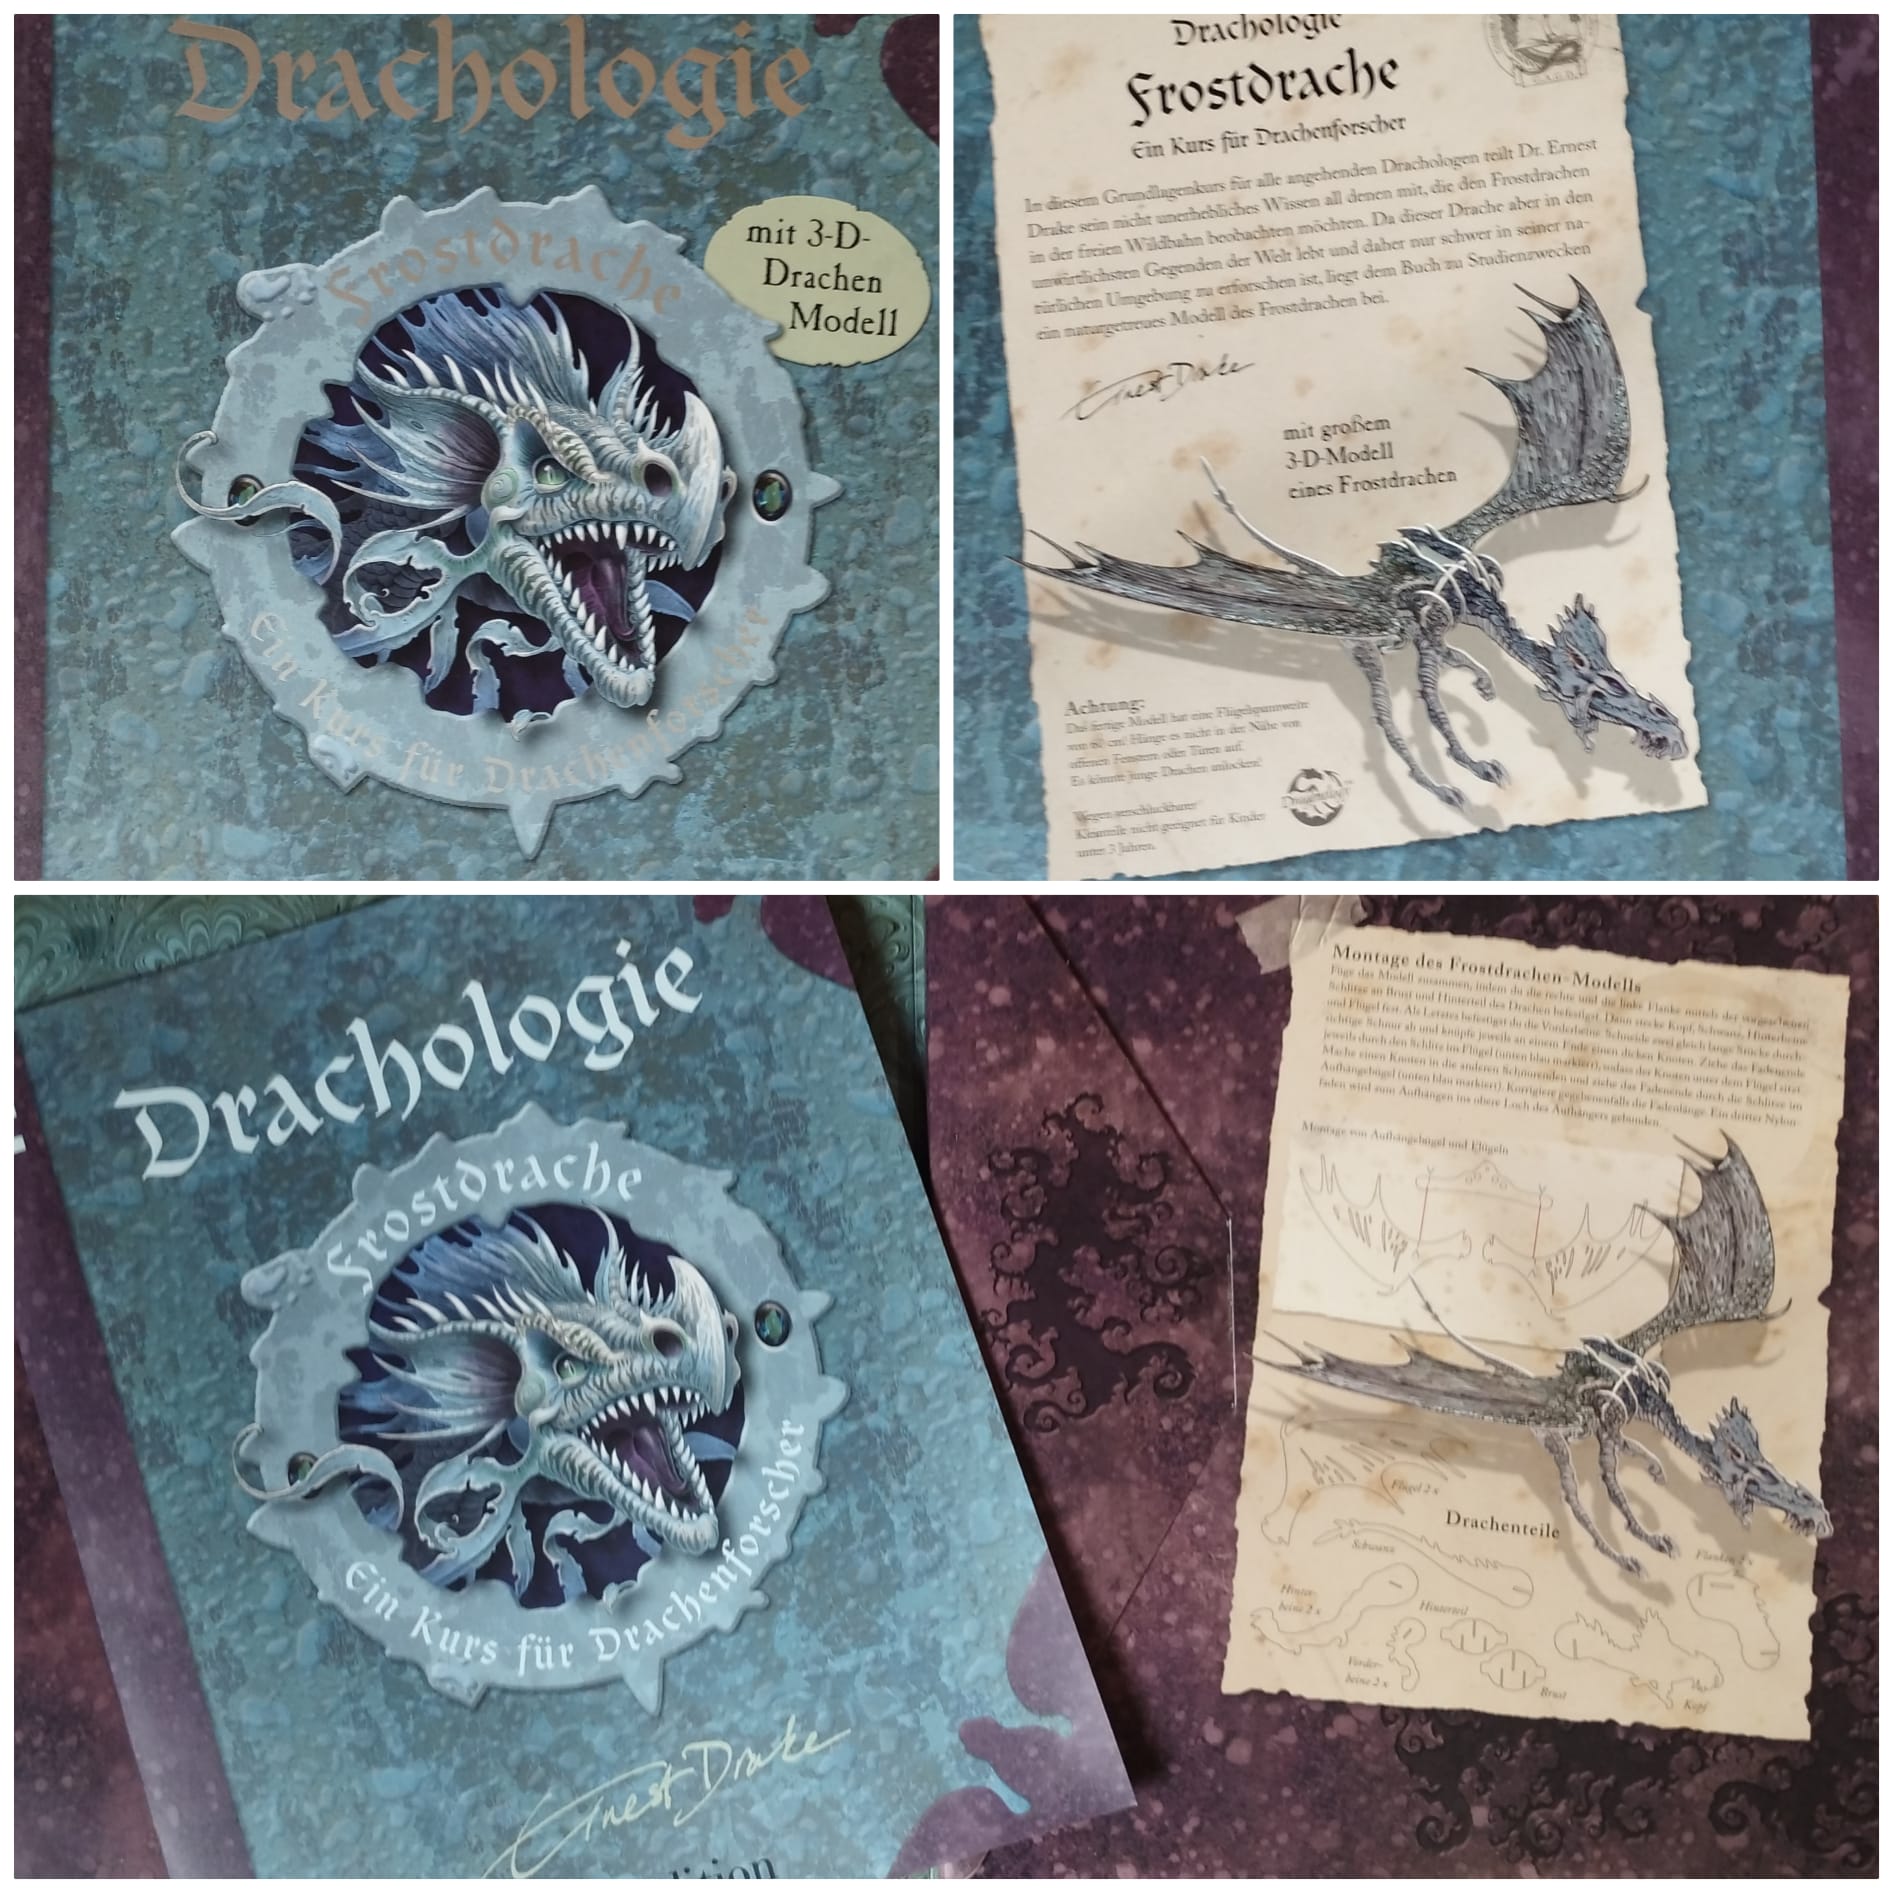 Drachologie Frostdrache: Ein Kurs für Drachenforscher